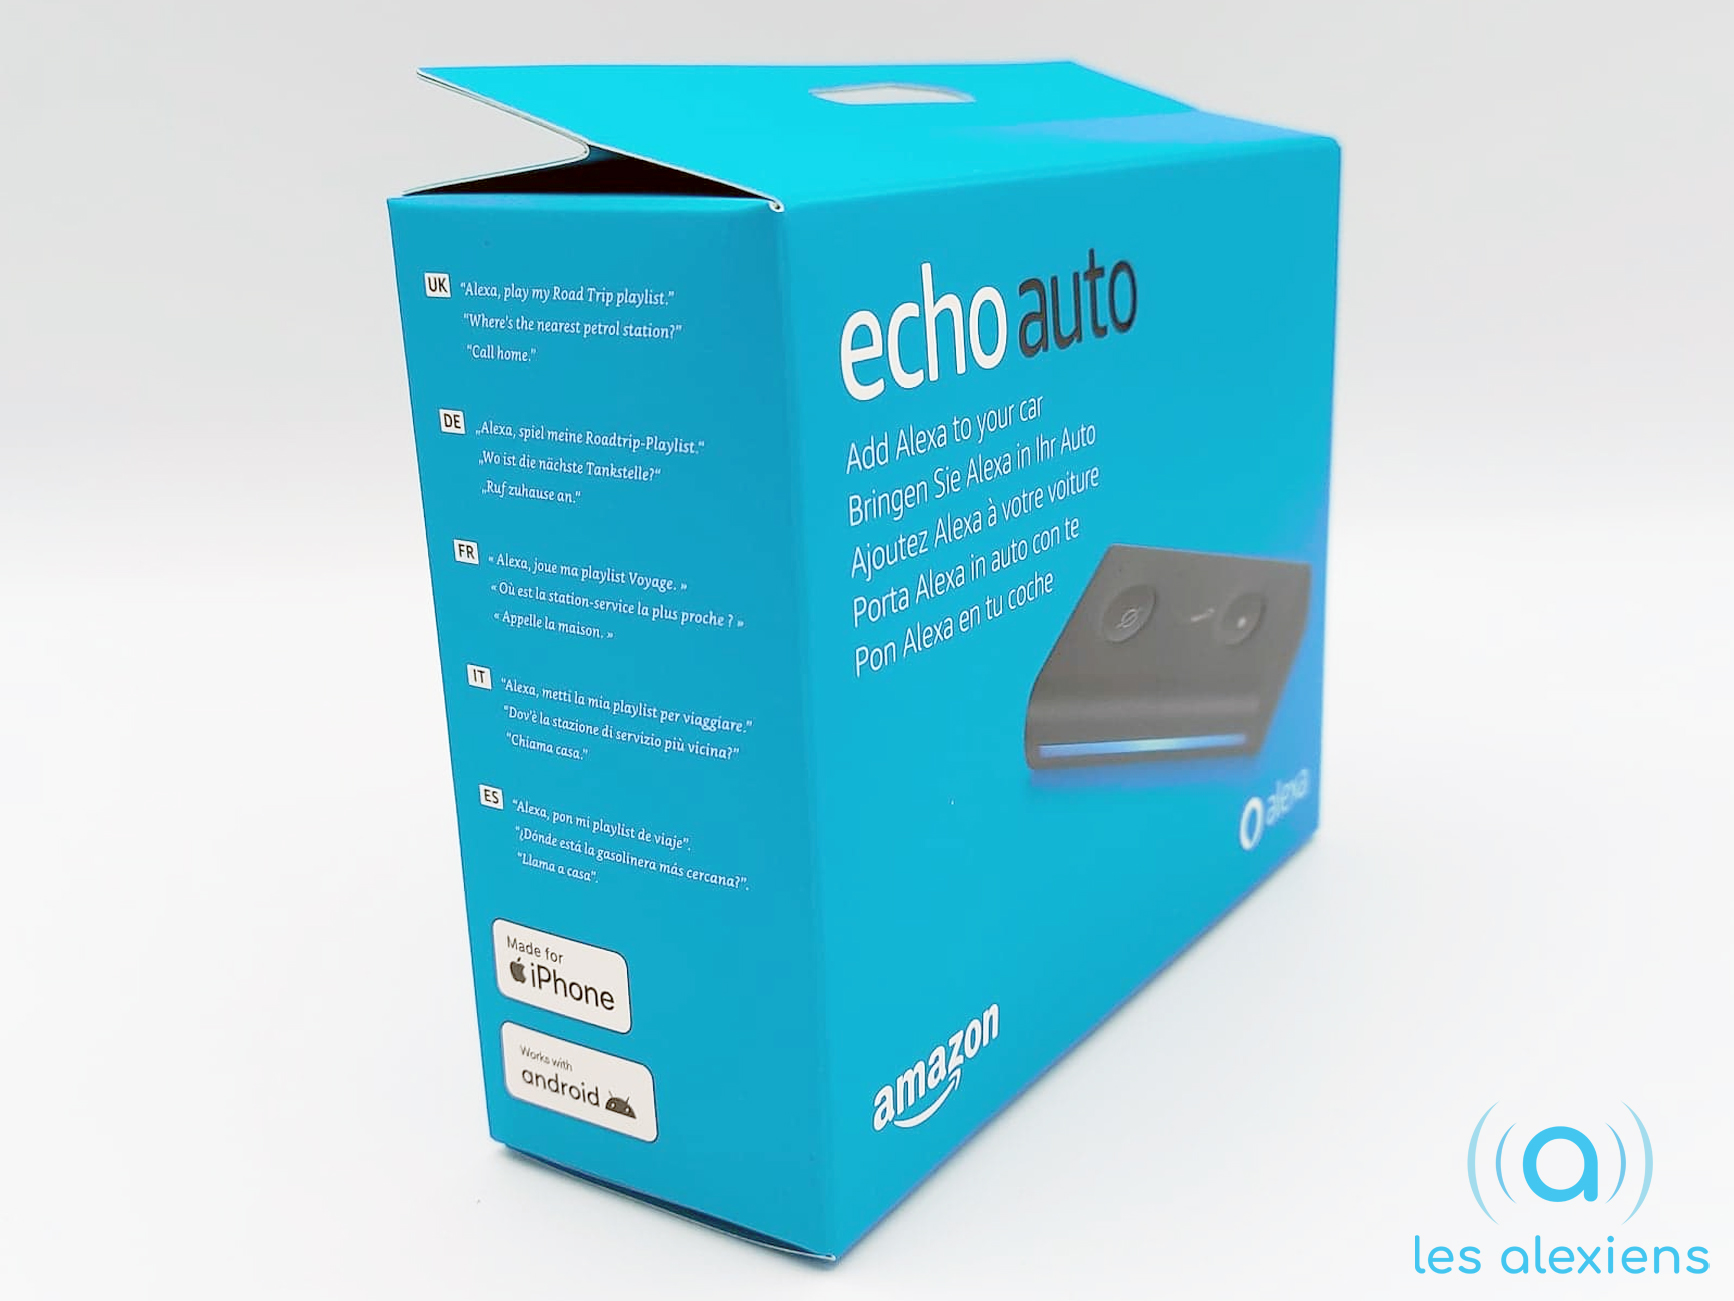 Echo Auto, Ajoutez Alexa à votre voiture - Achat / Vente kit